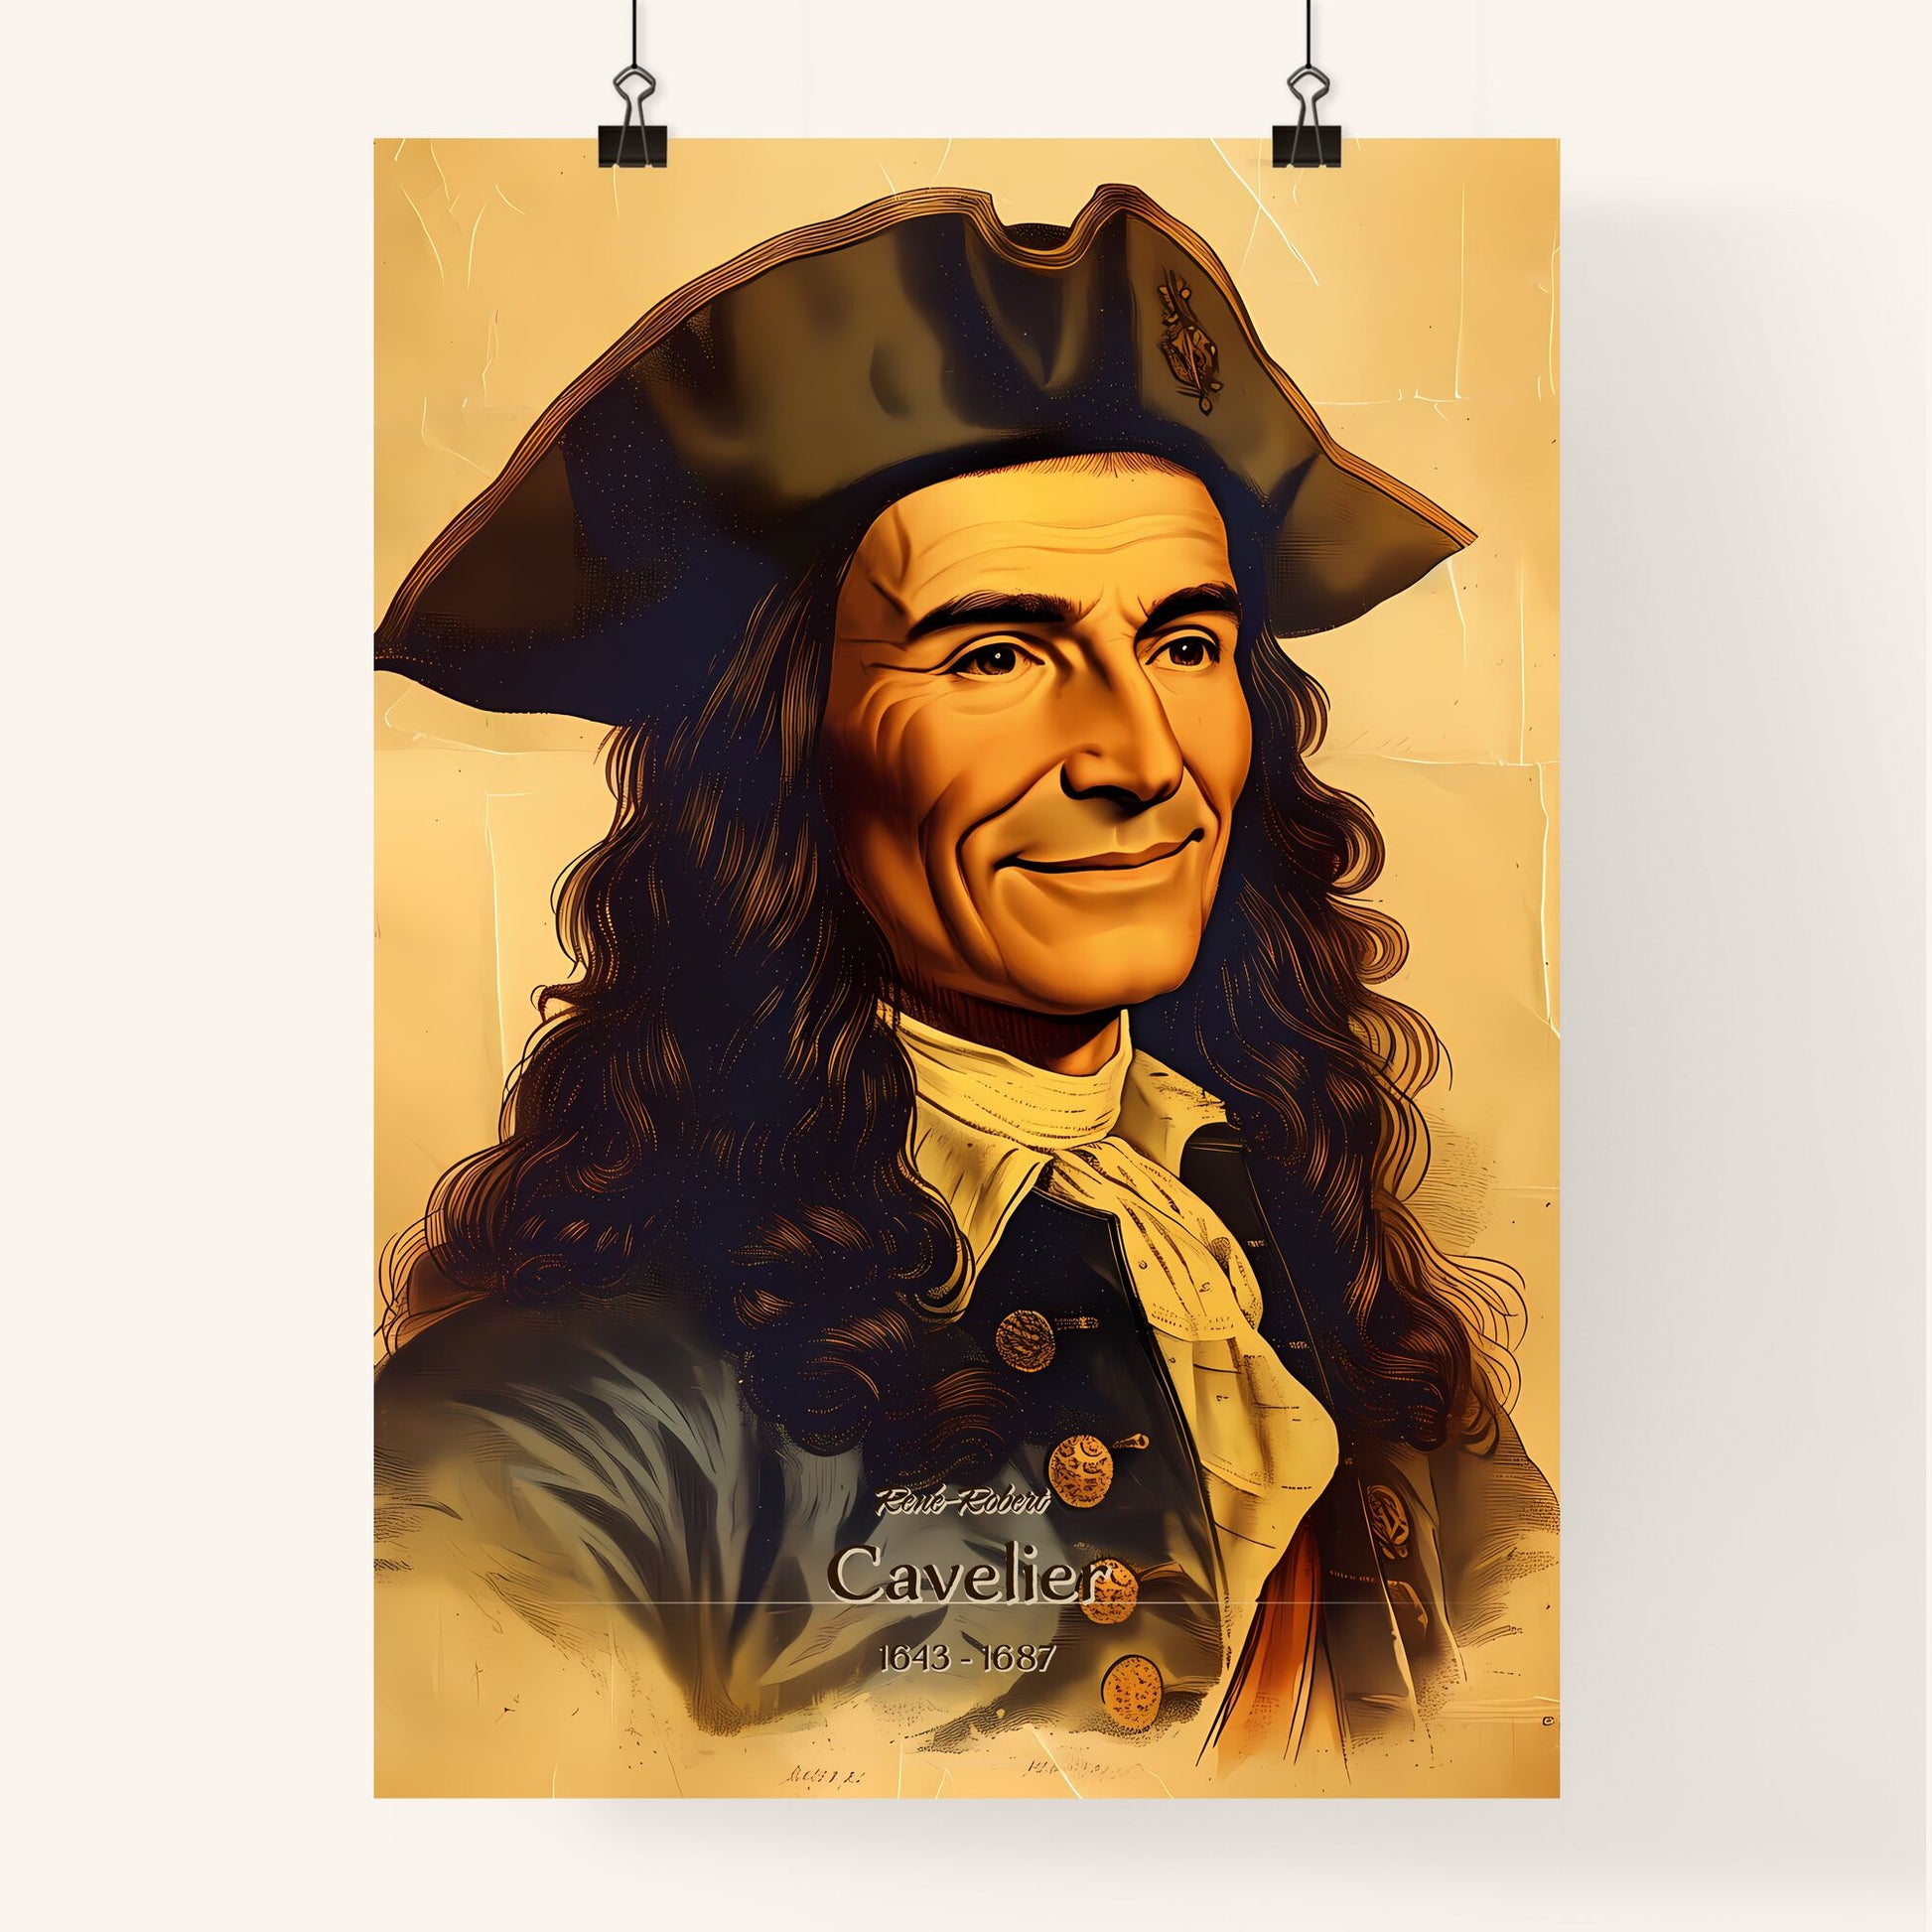 René-Robert, Cavelier, 1643 - 1687, A Poster of a man in a pirate garment Default Title